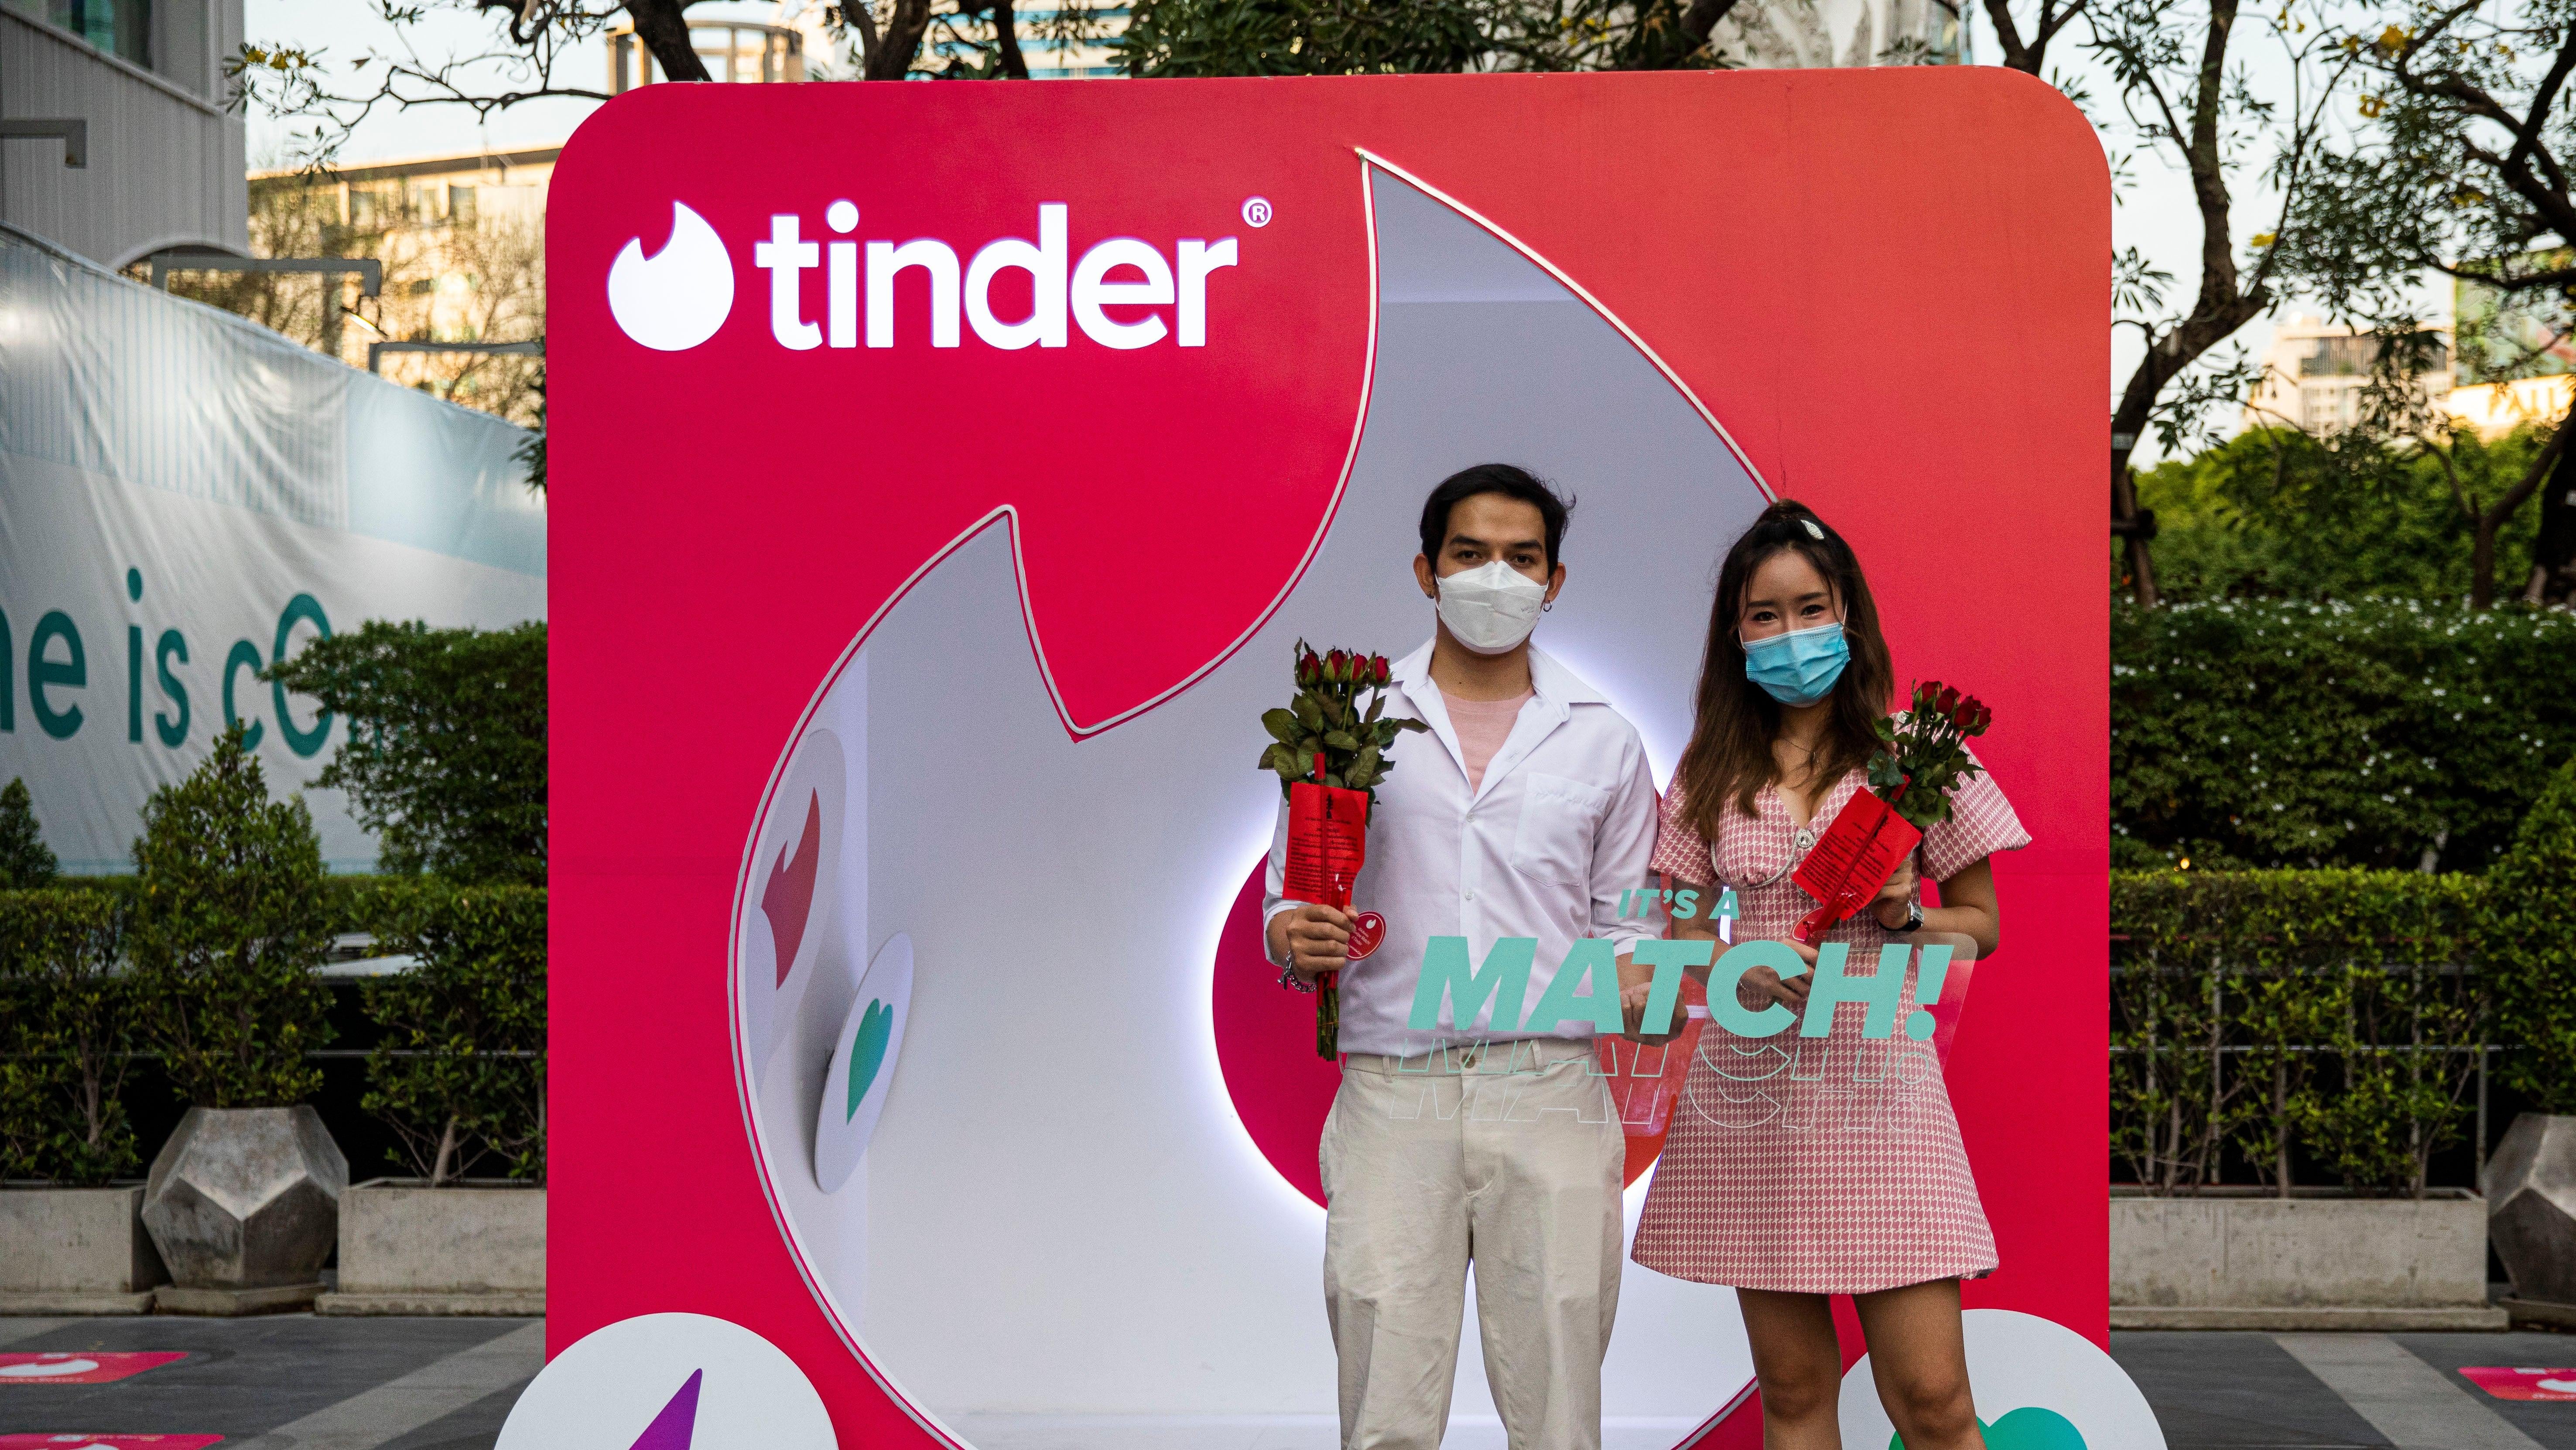 زوجان تايلانديان يقفان في كشك Tinder في يوم عيد الحب في 14 فبراير 2022 في بانكوك ، تايلاند.  الشعب التايلاندي يشارك في مراسم الصلاة برعاية Tinder في ضريح تريمورتي ، الملقب بـ "مرقد الحب"في يوم عيد الحب. 